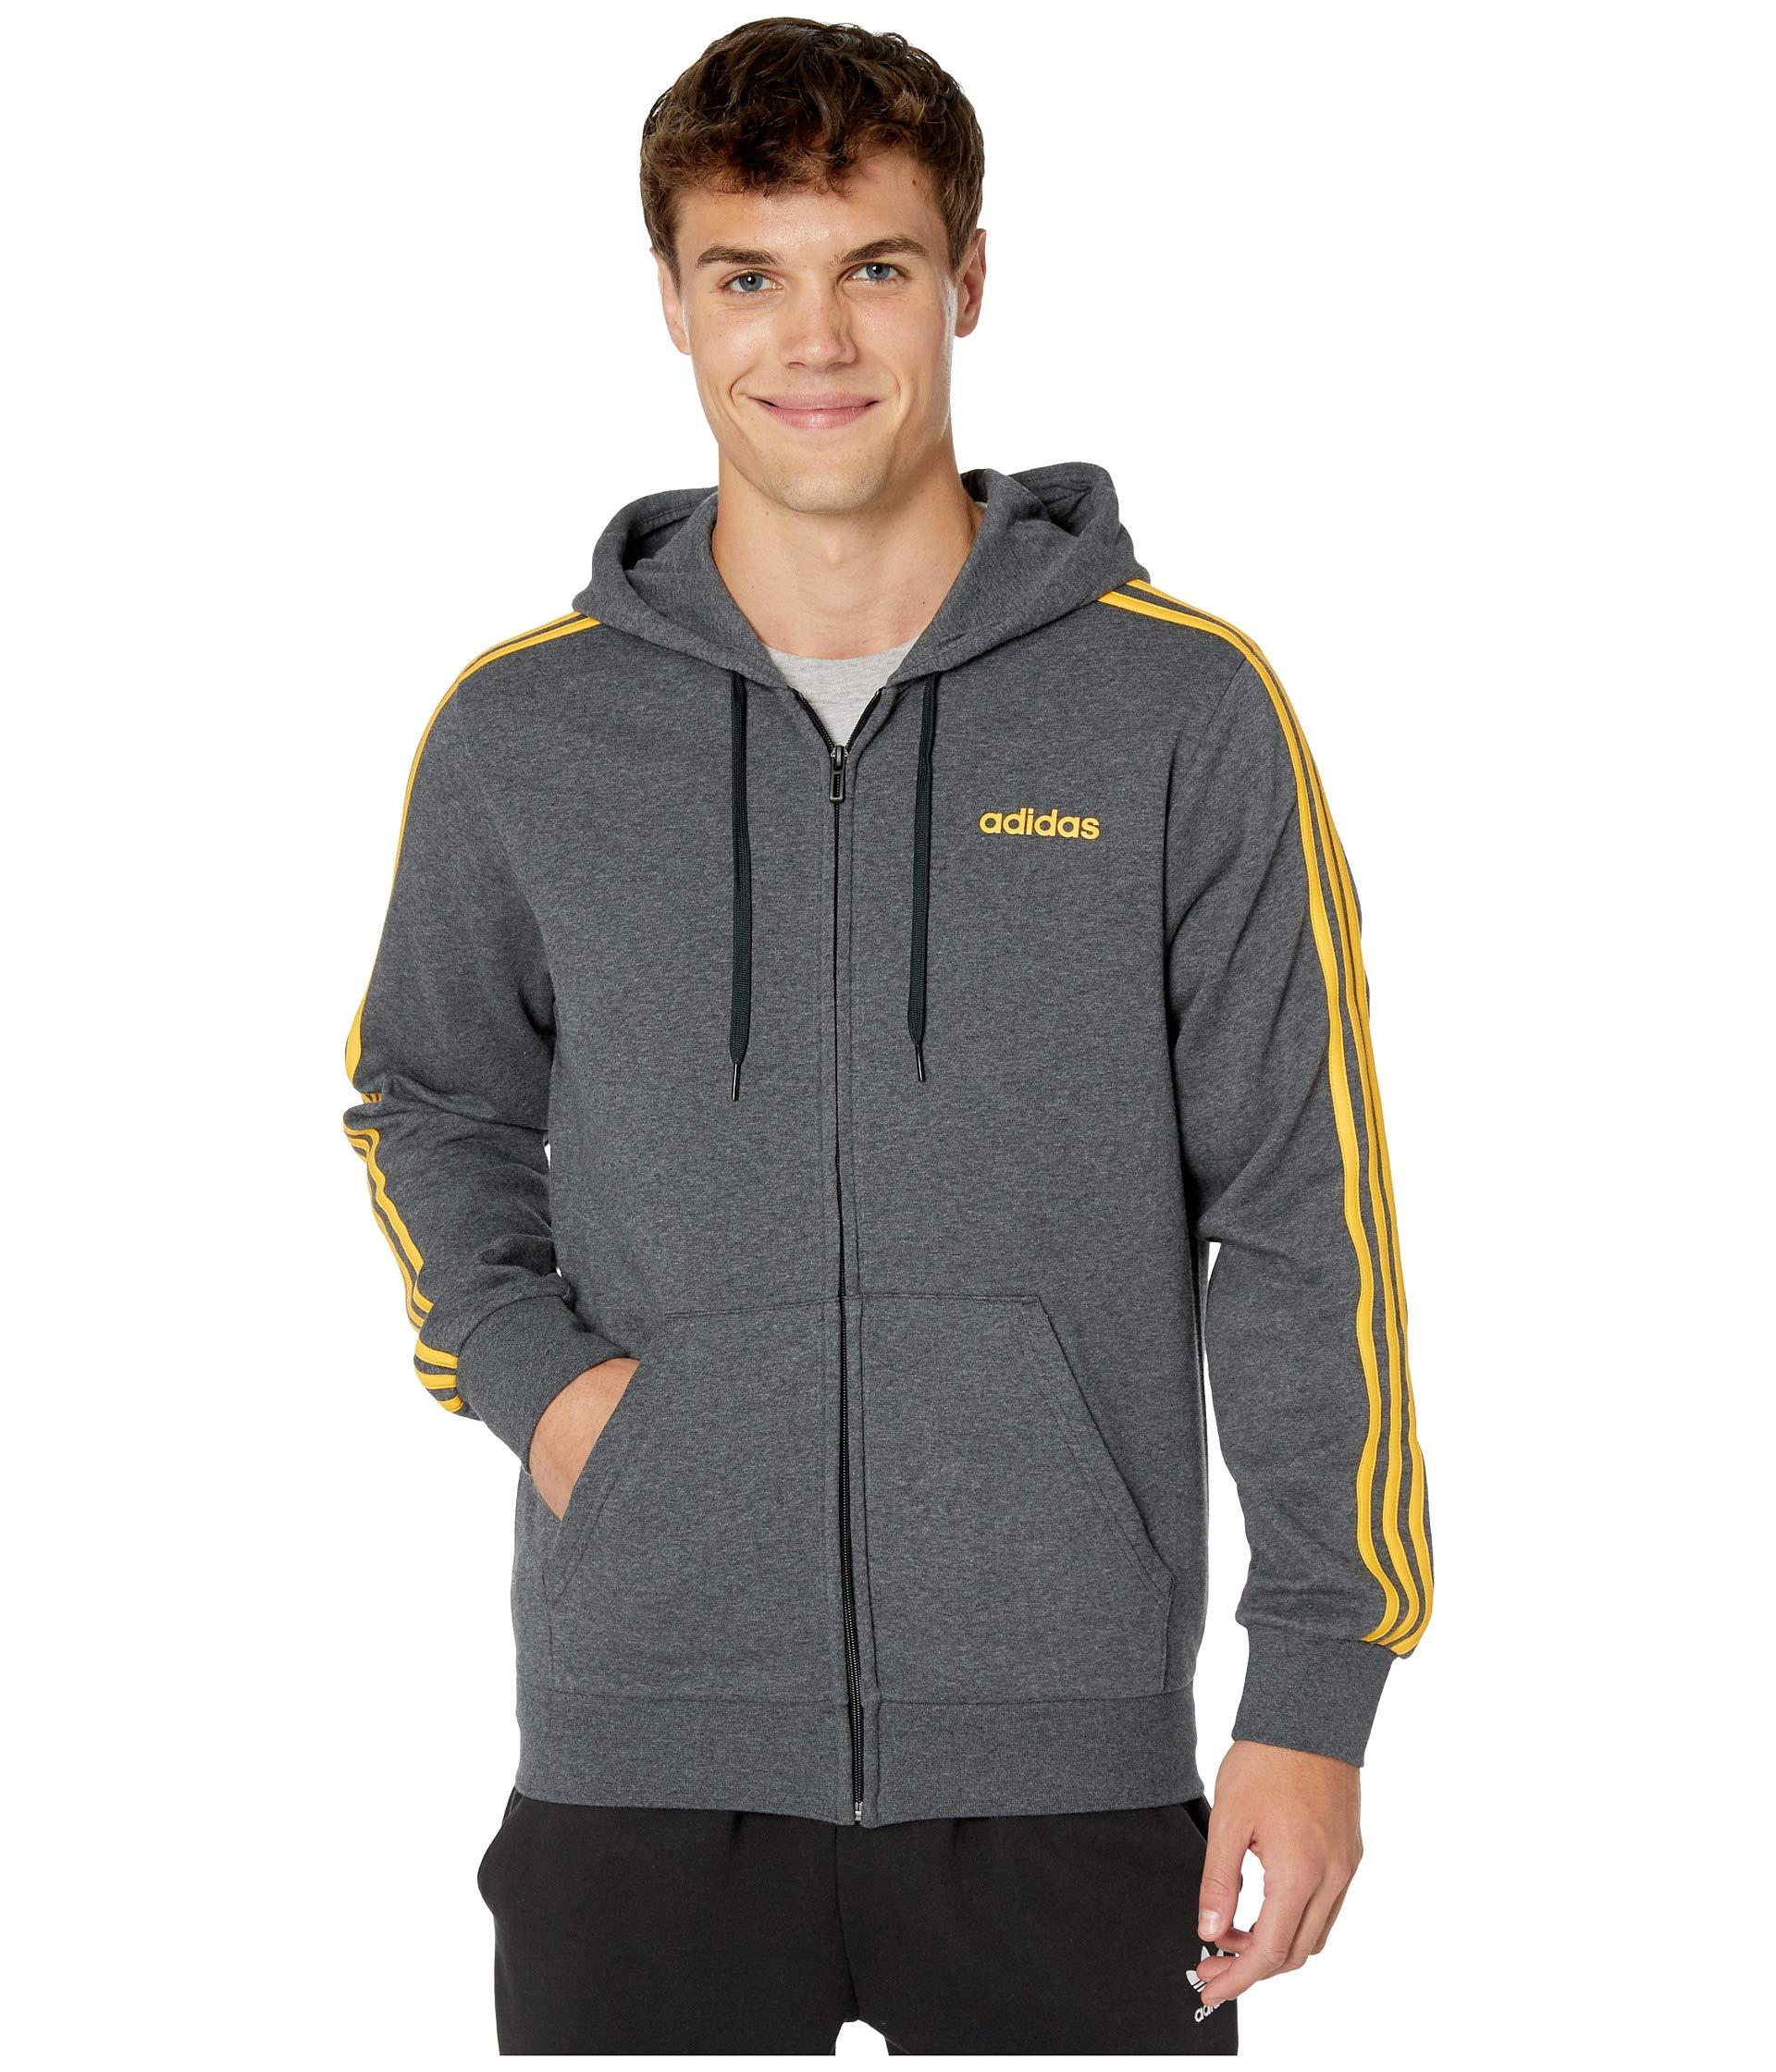 adidas Essentials 3-stripes Fleece Full Zip Hoodie in Gray for Men - Lyst